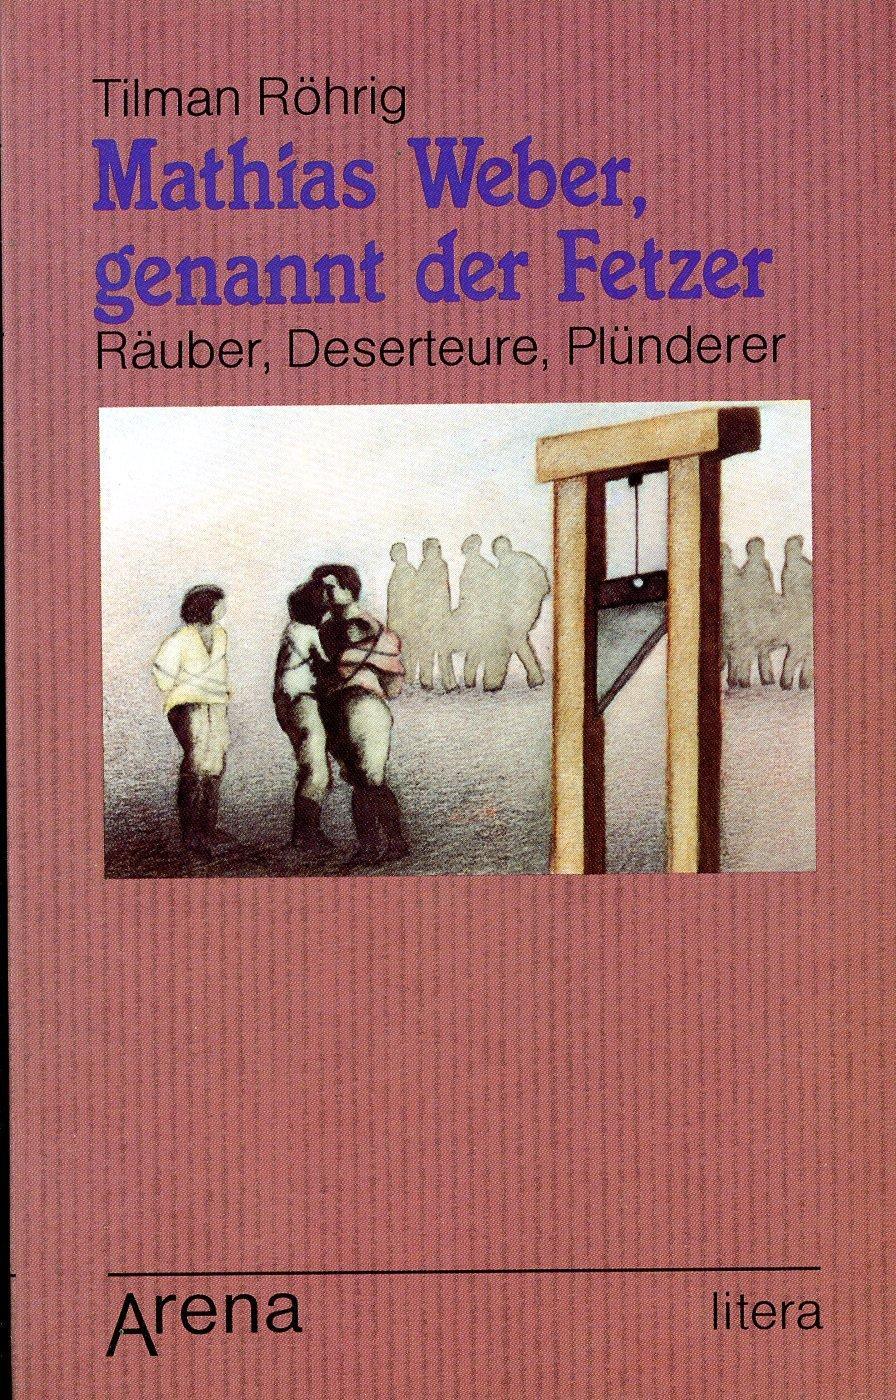 Tilman Röhrig: Mathias Weber, genannt der Fetzer (Paperback, German language, 1983, Arena Verlag)